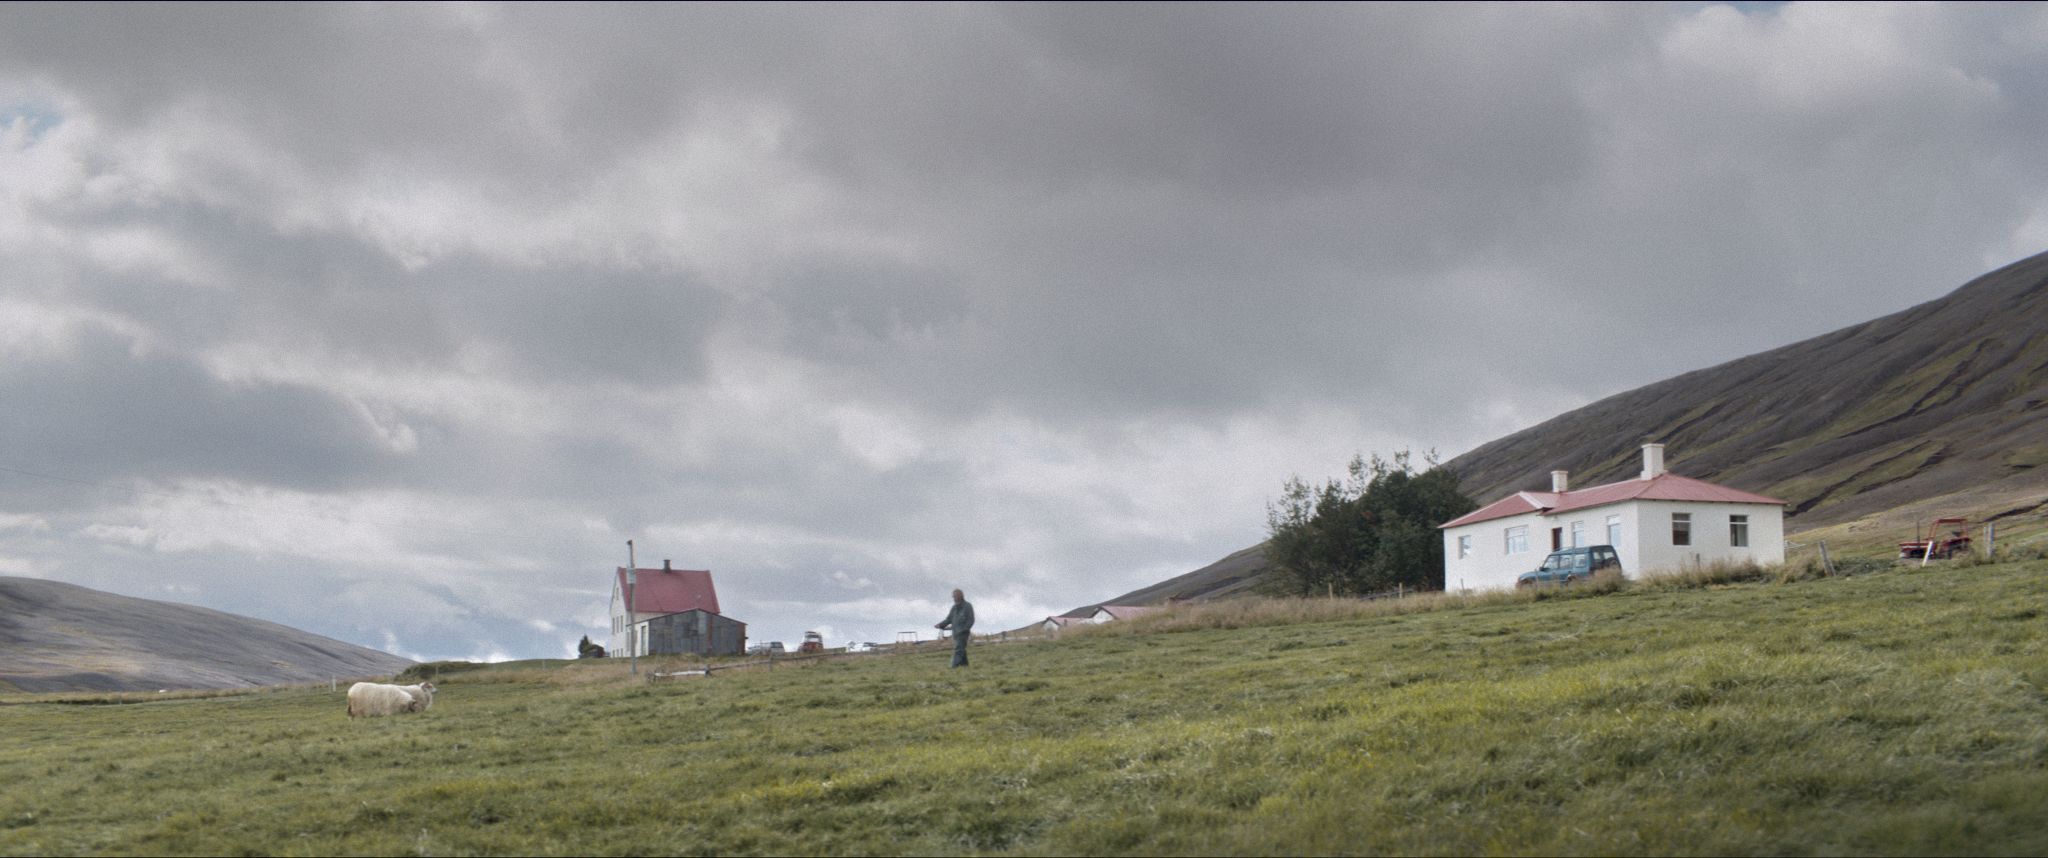 bohater na tle dwóch domów usytuowanych na odludziu - pośród rozległych, górzystych terenów Islandii